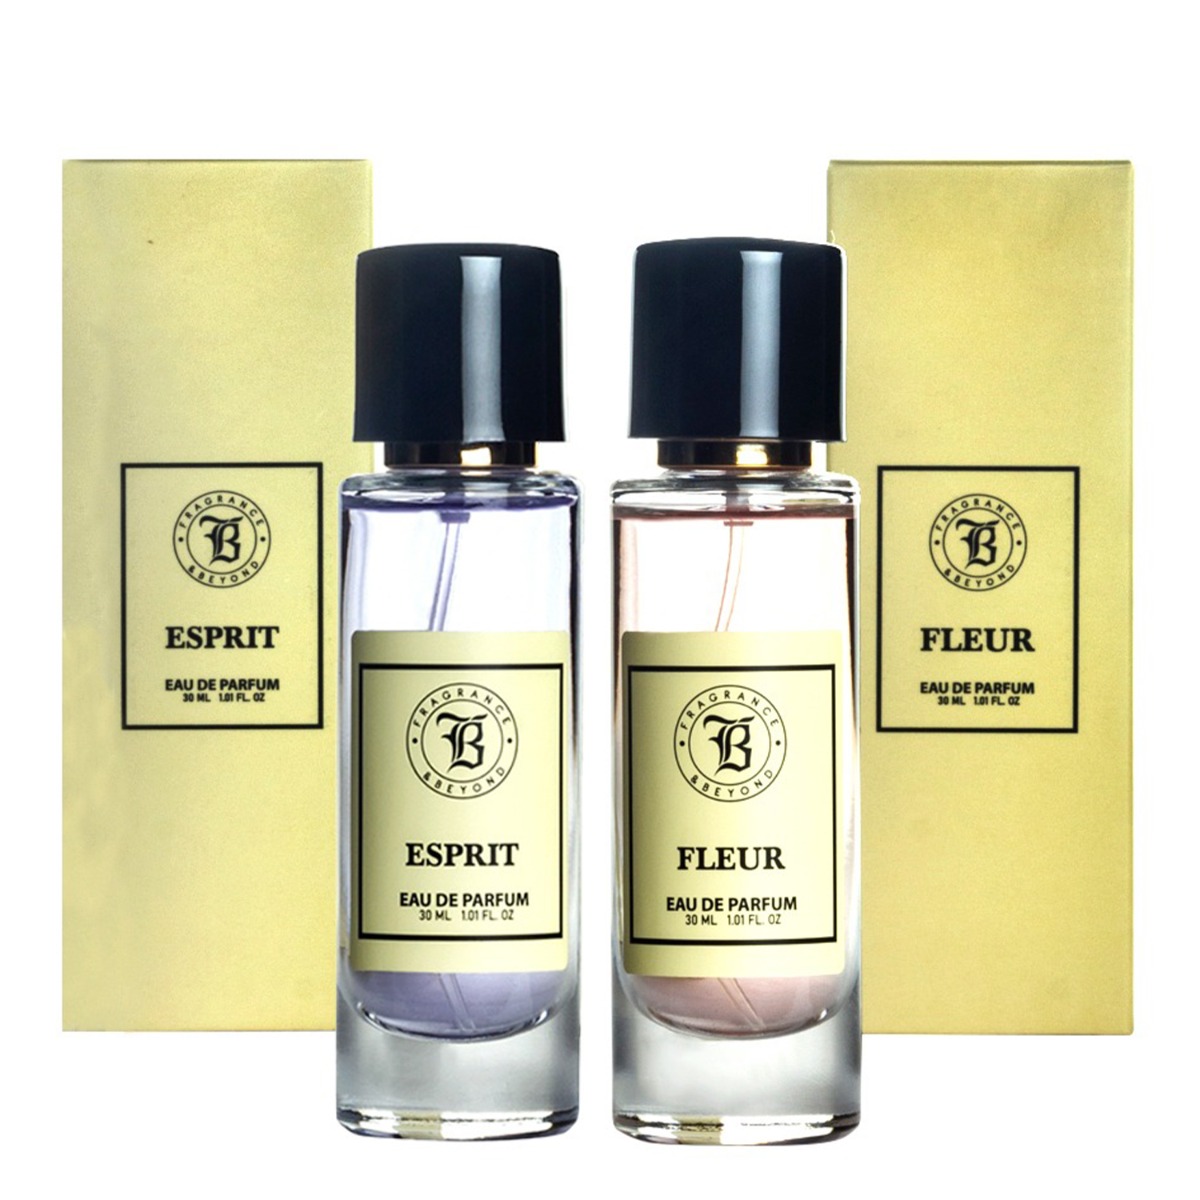 Fragrance & Beyond Esprit and Fleur Eau De Parfum (Perfume) Combo For Women, 30ml Each